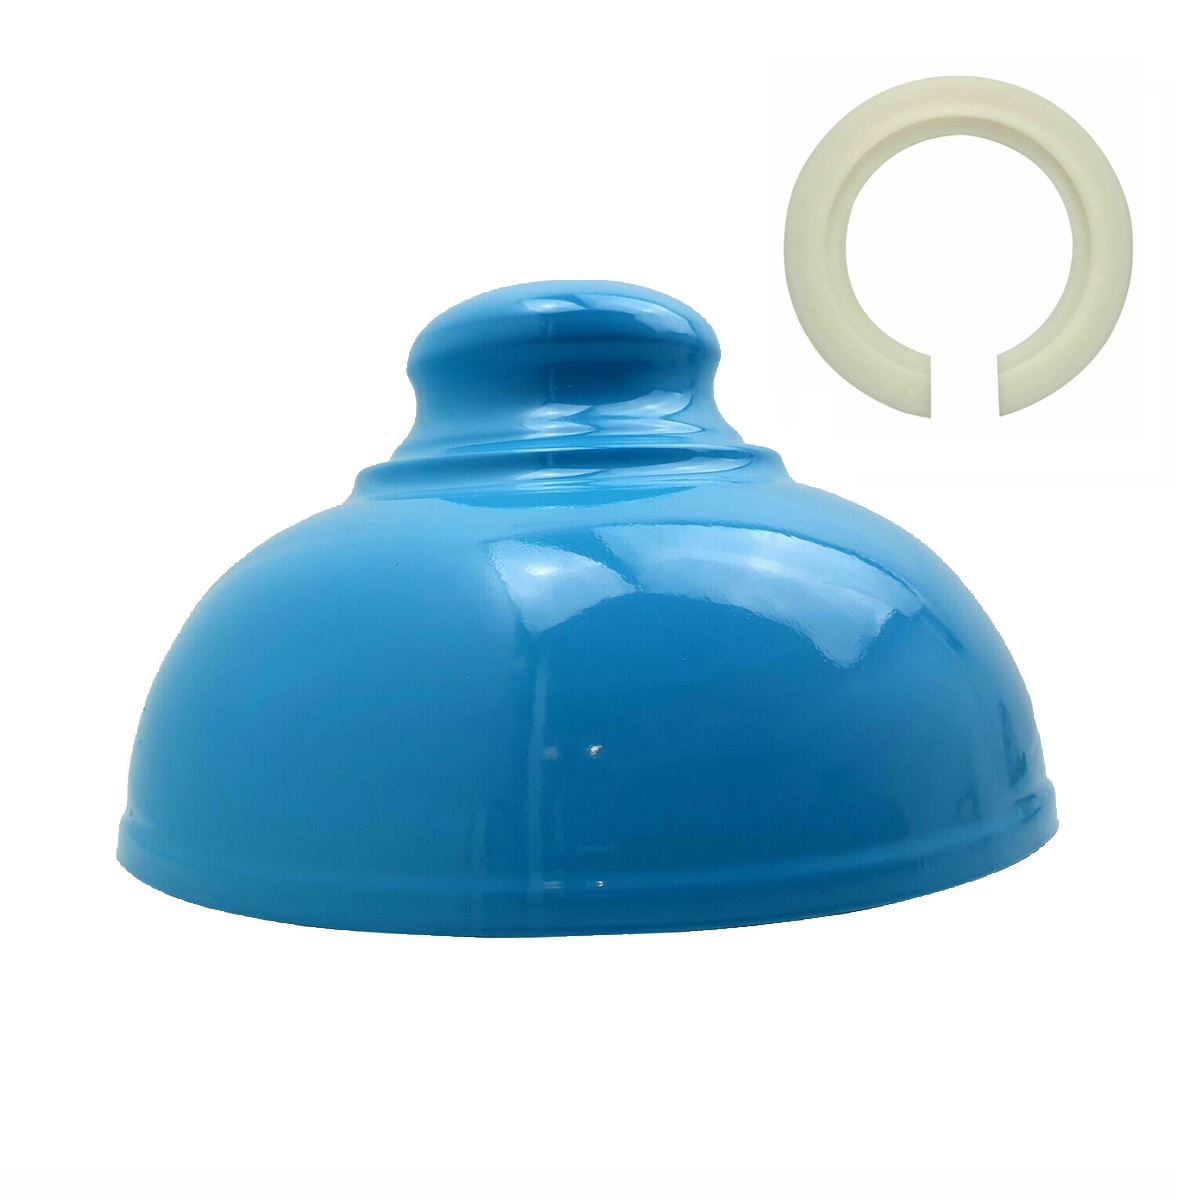 Blue metal lampshade